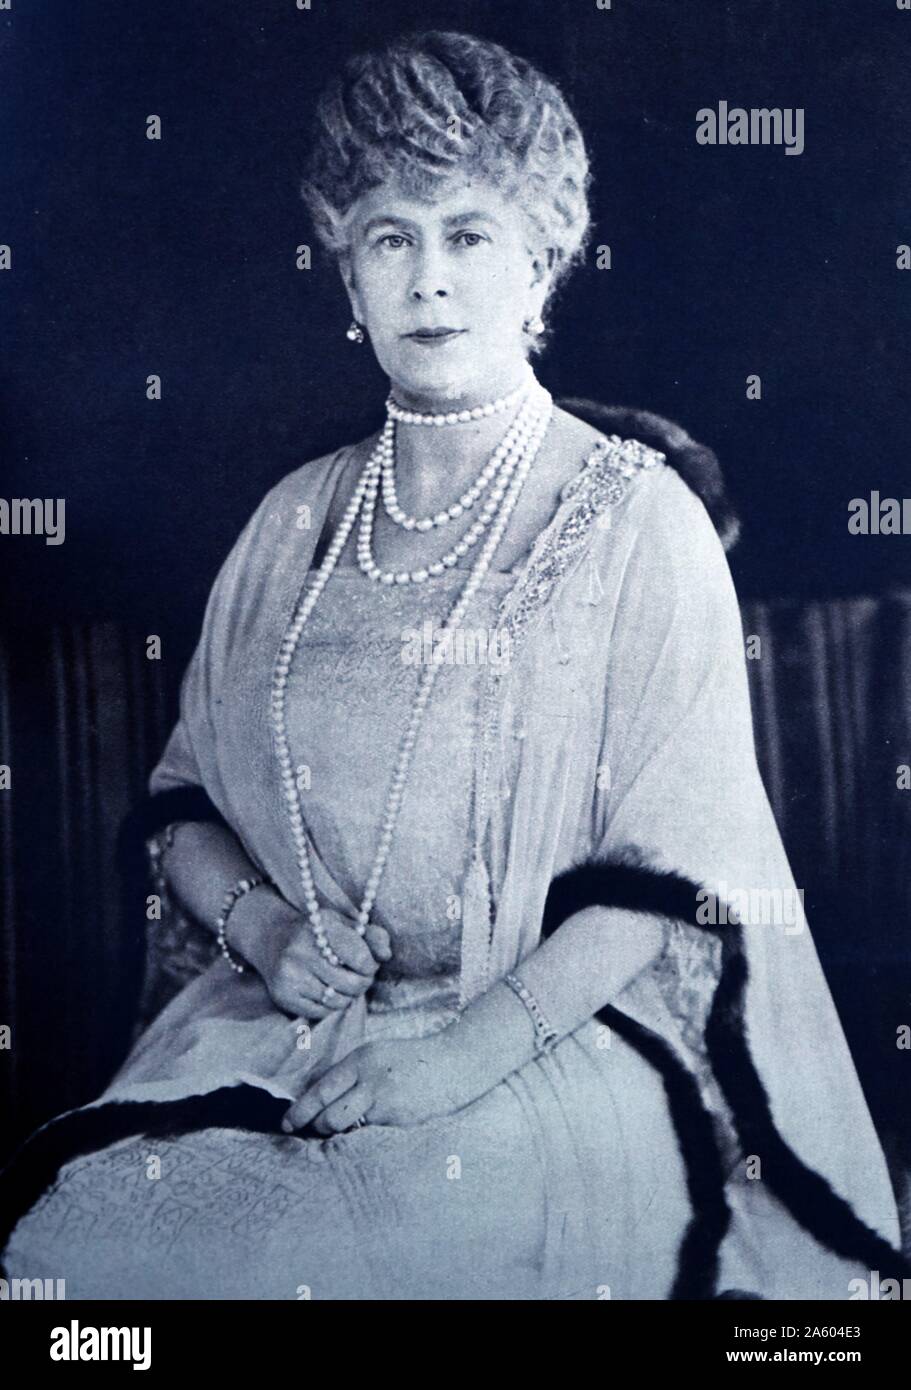 Ritratto fotografico della regina Alexandra della Danimarca (1844-1925) regina consorte del Regno Unito di Gran Bretagna e Irlanda e Imperatrice consorte dell India come la moglie di King-Emperor Edward VII. In data xx secolo Foto Stock